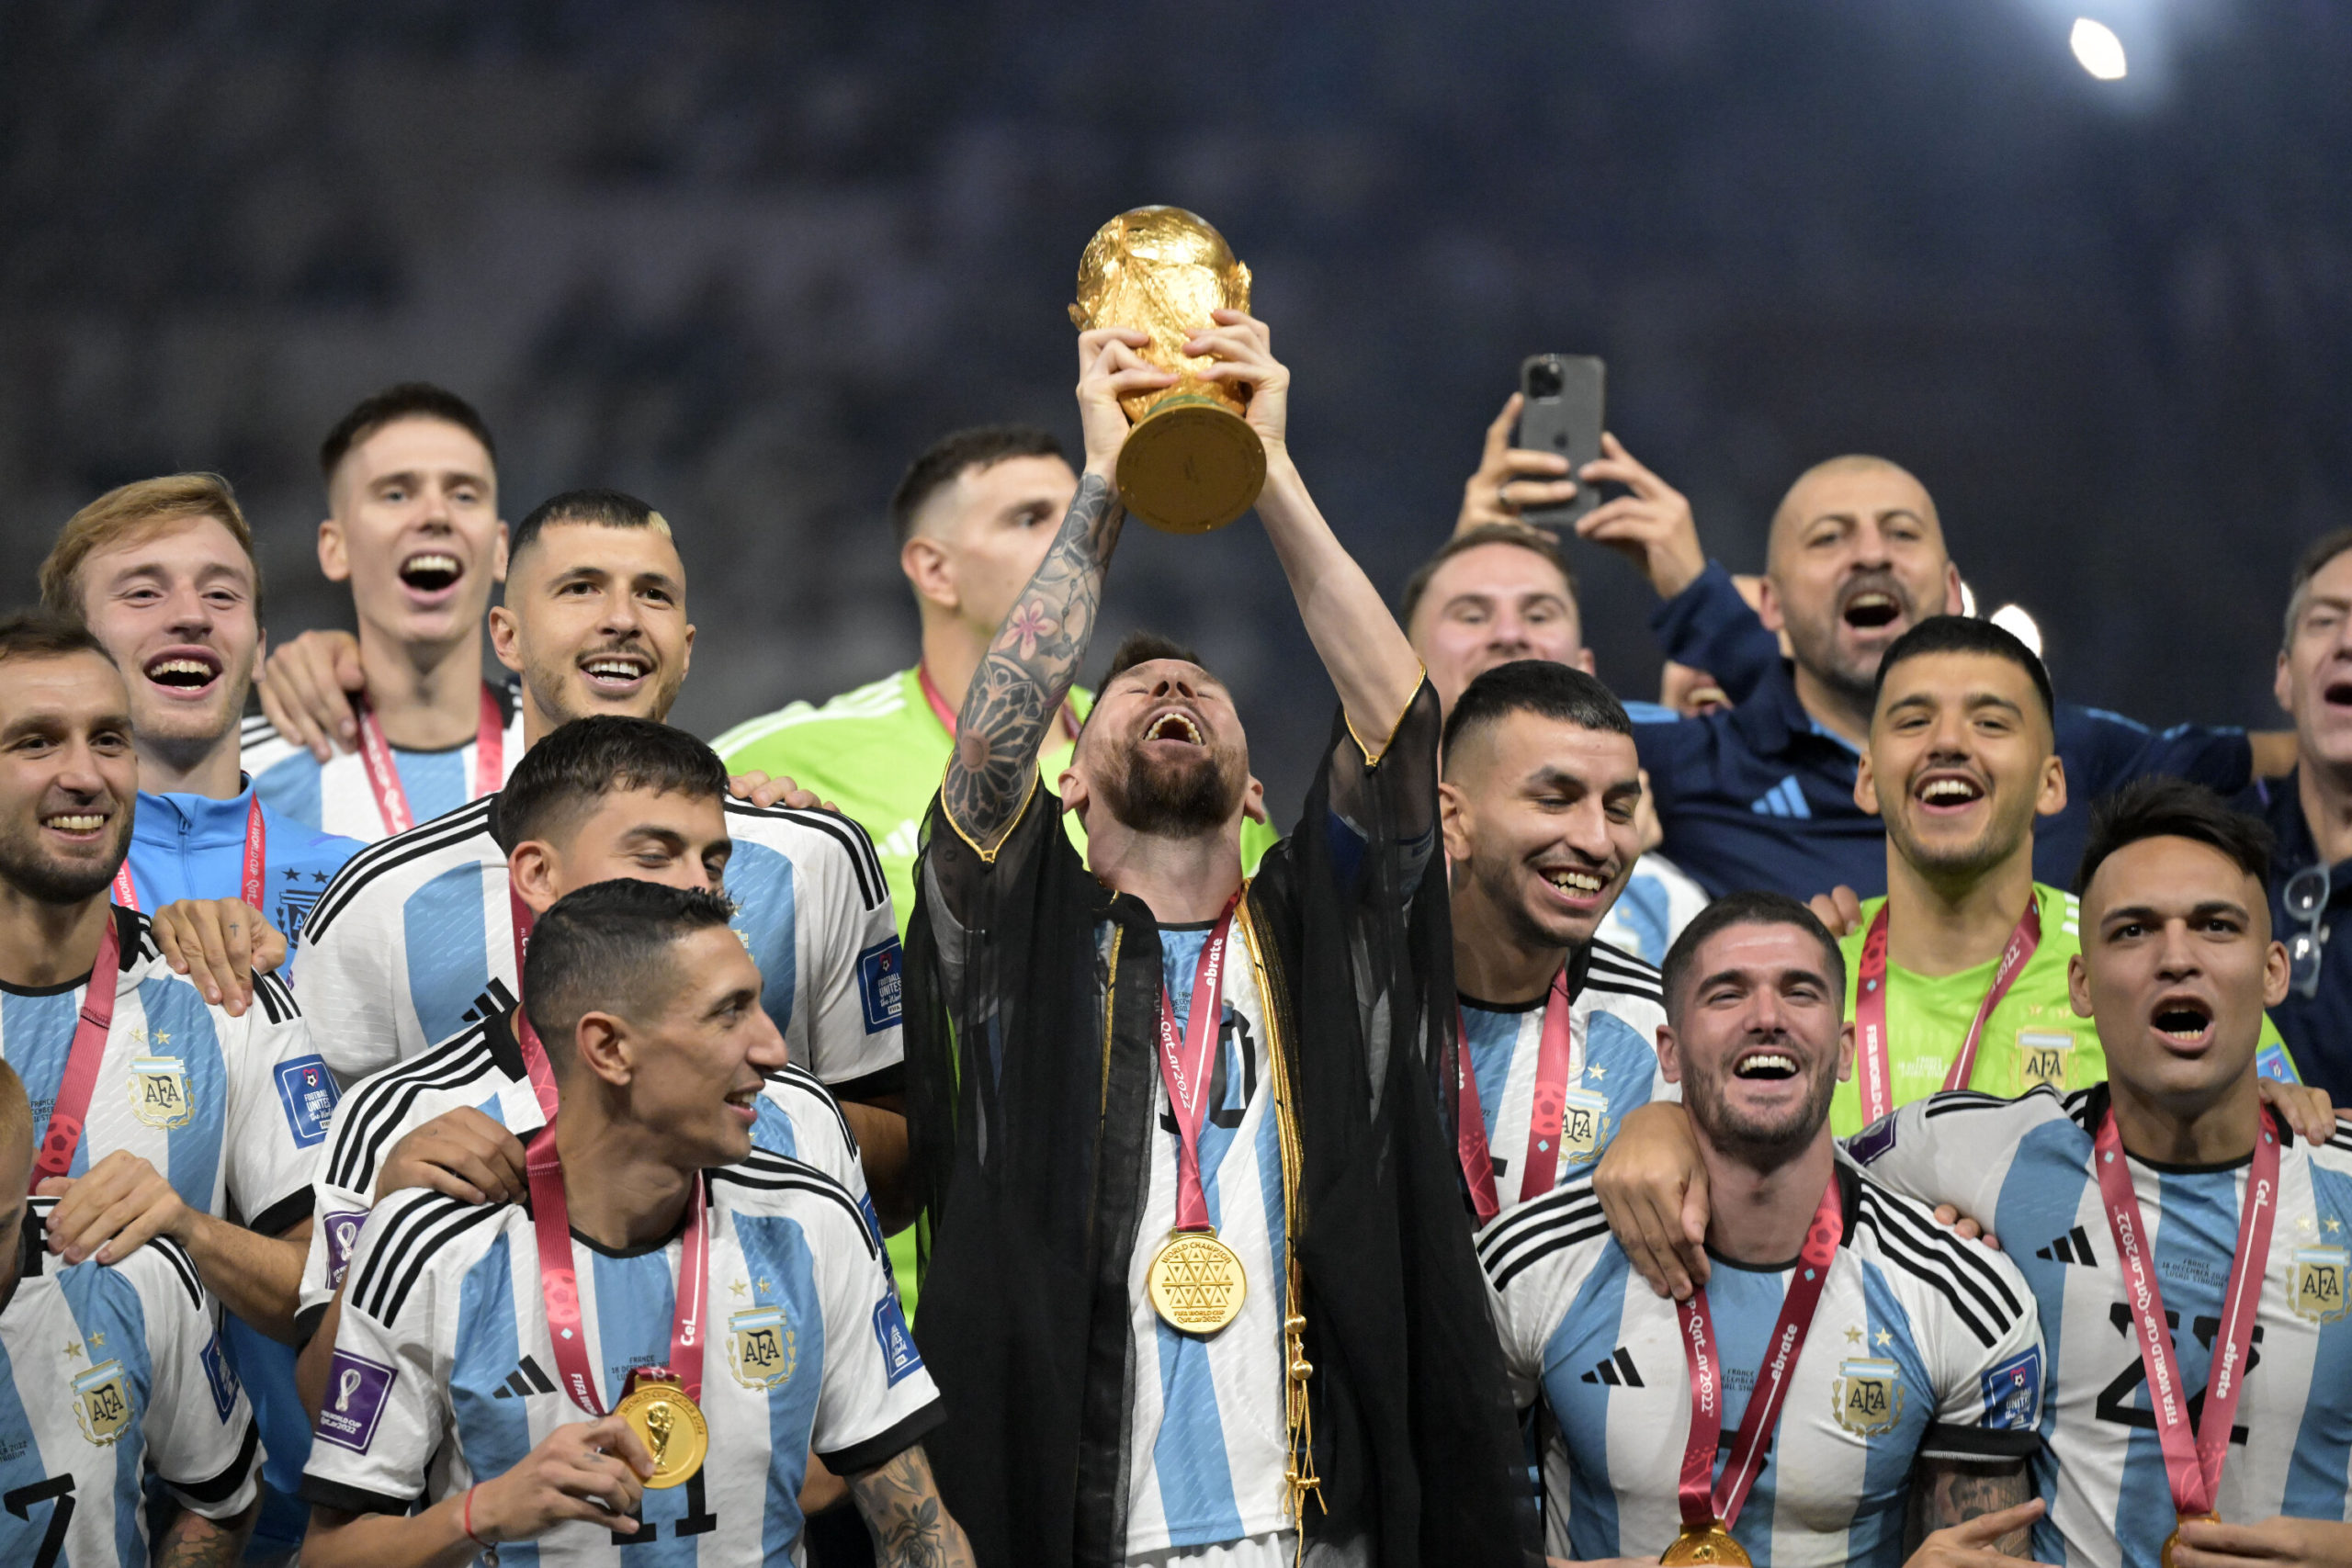 Quando termina Copa do Mundo de 2022? Disputa de terceiro lugar é hoje;  confira também data e horário da final entre França e Argentina